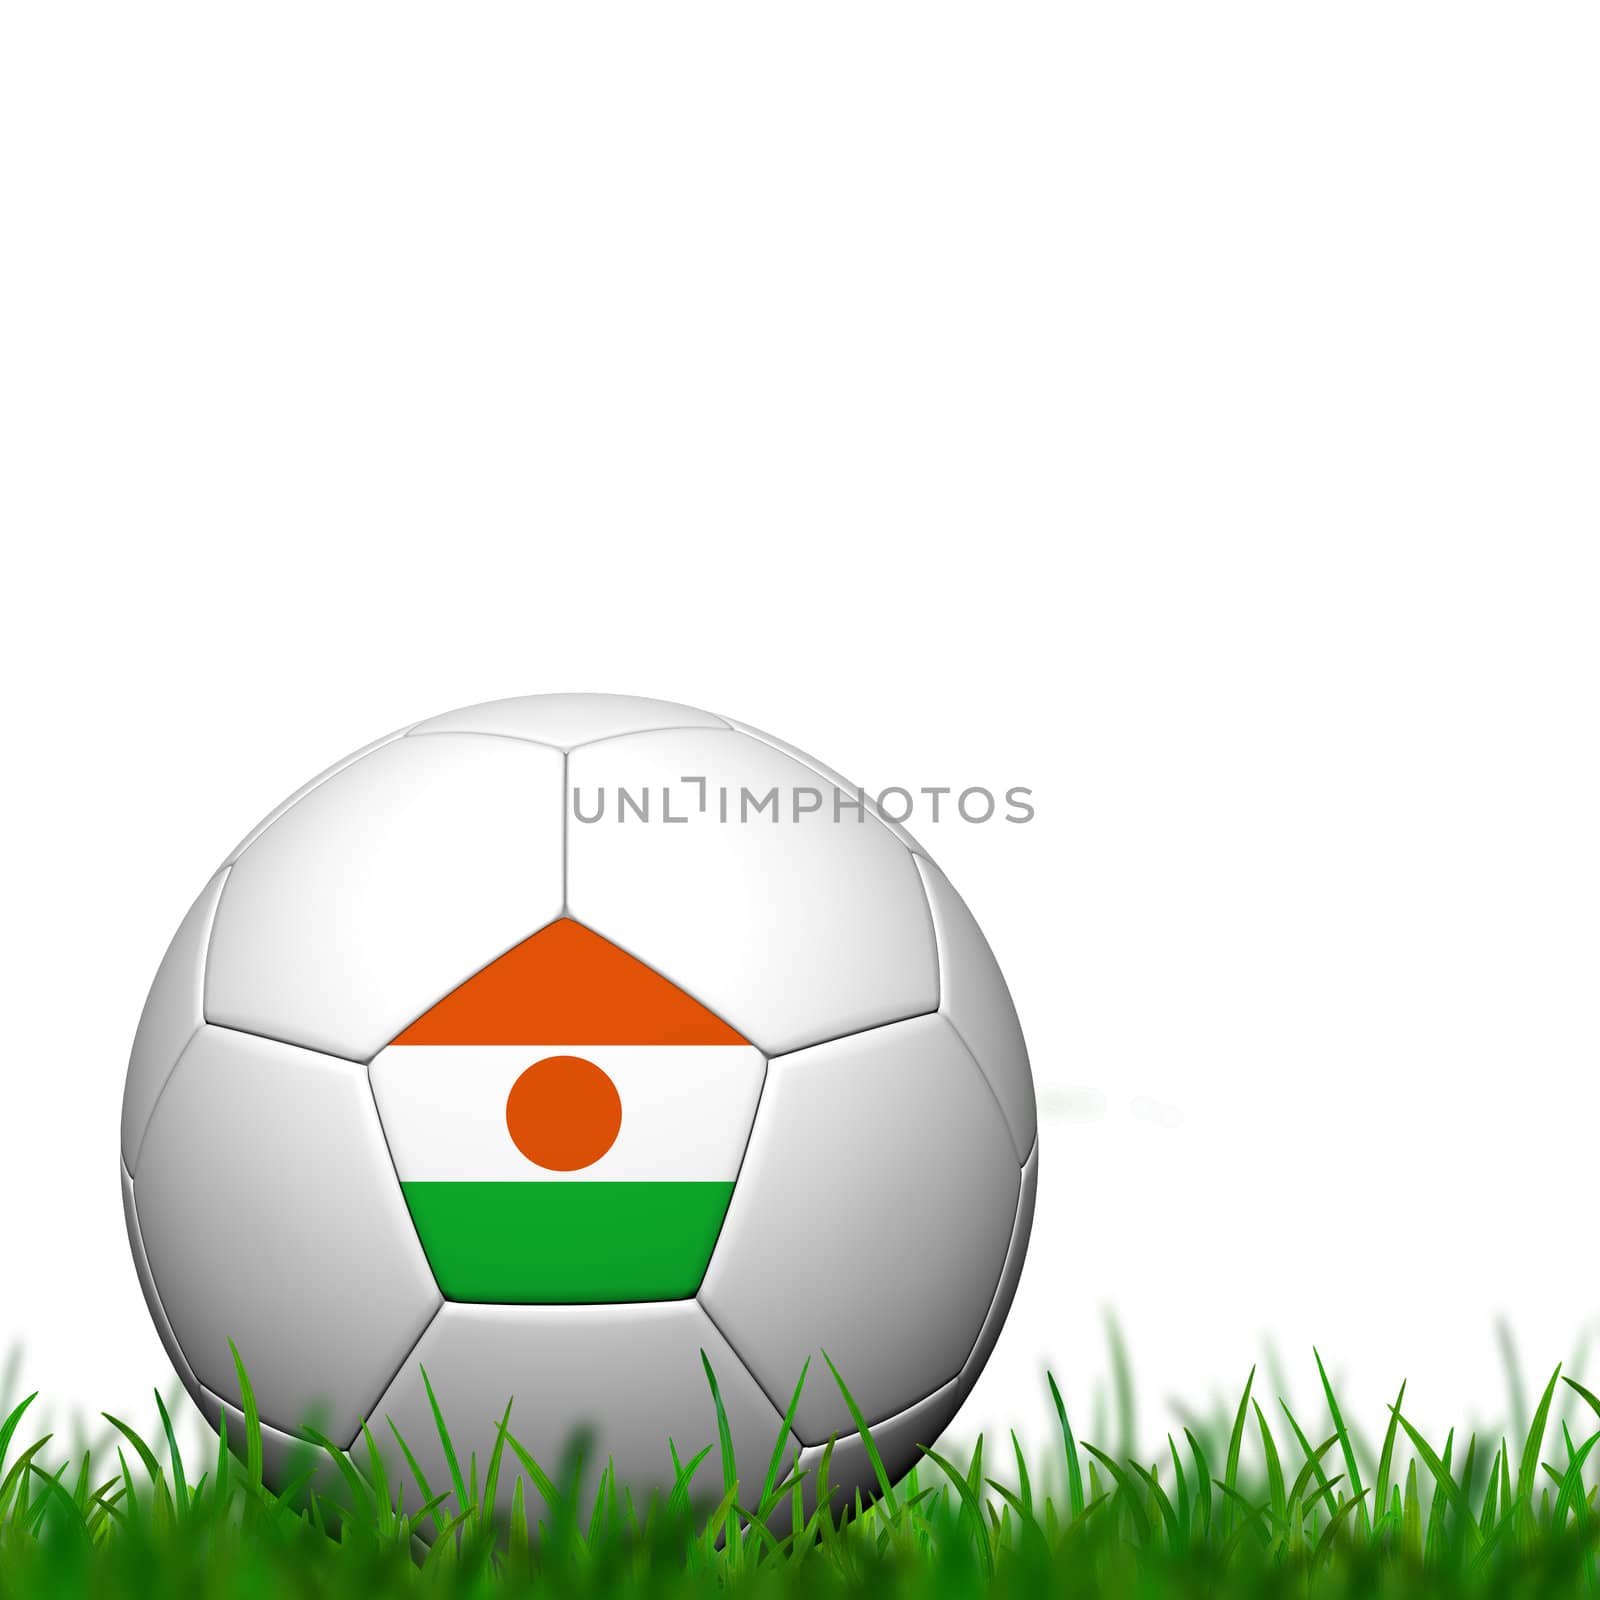 3D Soccer balll Niger Flag Patter on green grass over white background